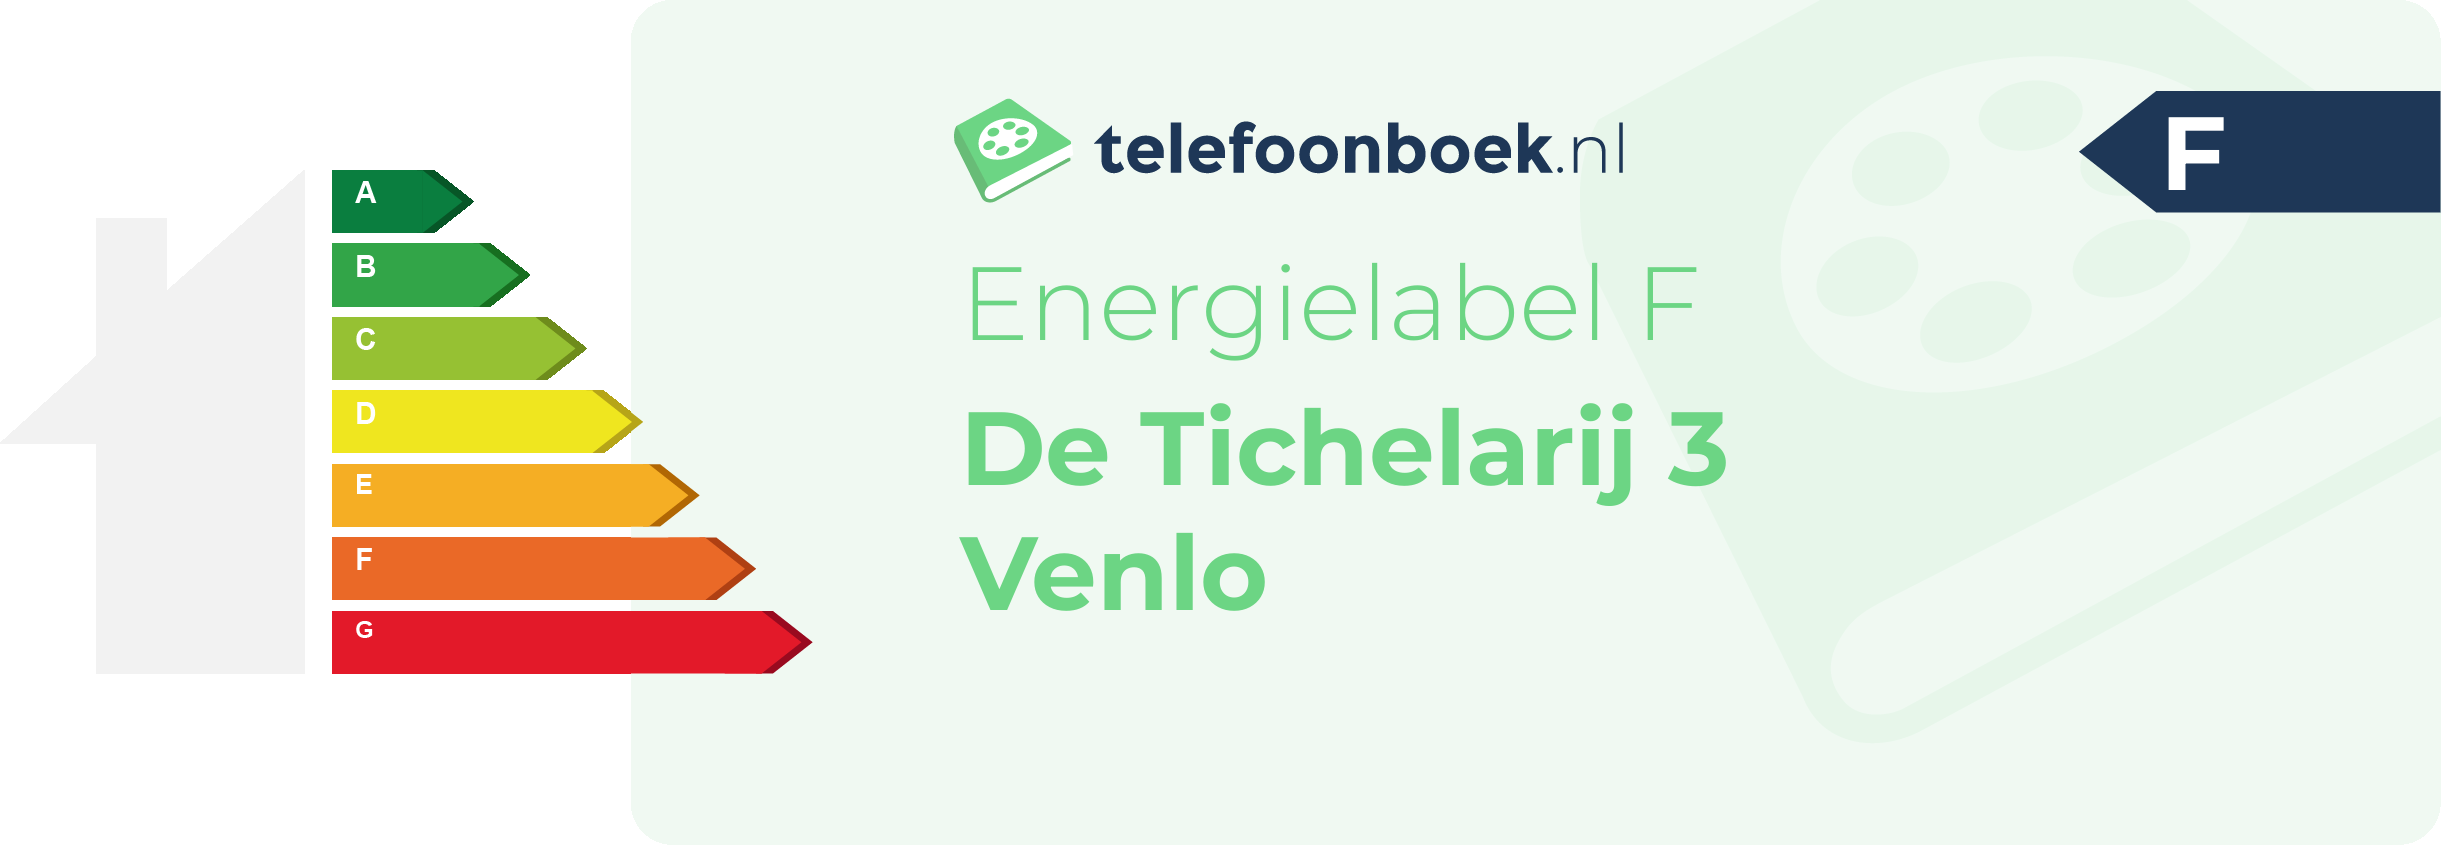 Energielabel De Tichelarij 3 Venlo